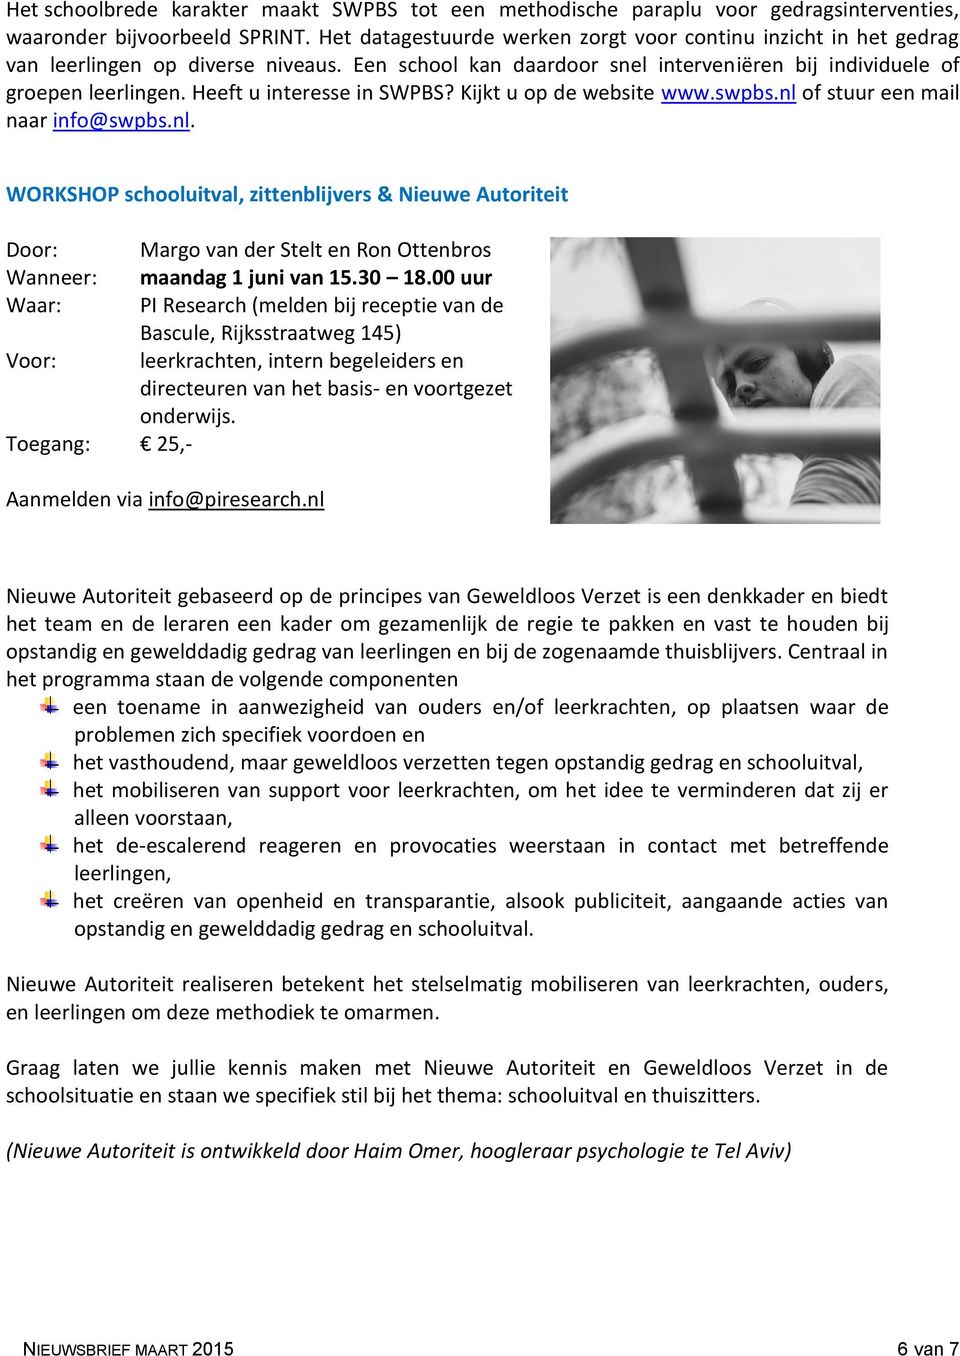 Heeft u interesse in SWPBS? Kijkt u op de website www.swpbs.nl of stuur een mail naar info@swpbs.nl. WORKSHOP schooluitval, zittenblijvers & Nieuwe Autoriteit Door: Margo van der Stelt en Ron Ottenbros Wanneer: maandag 1 juni van 15.